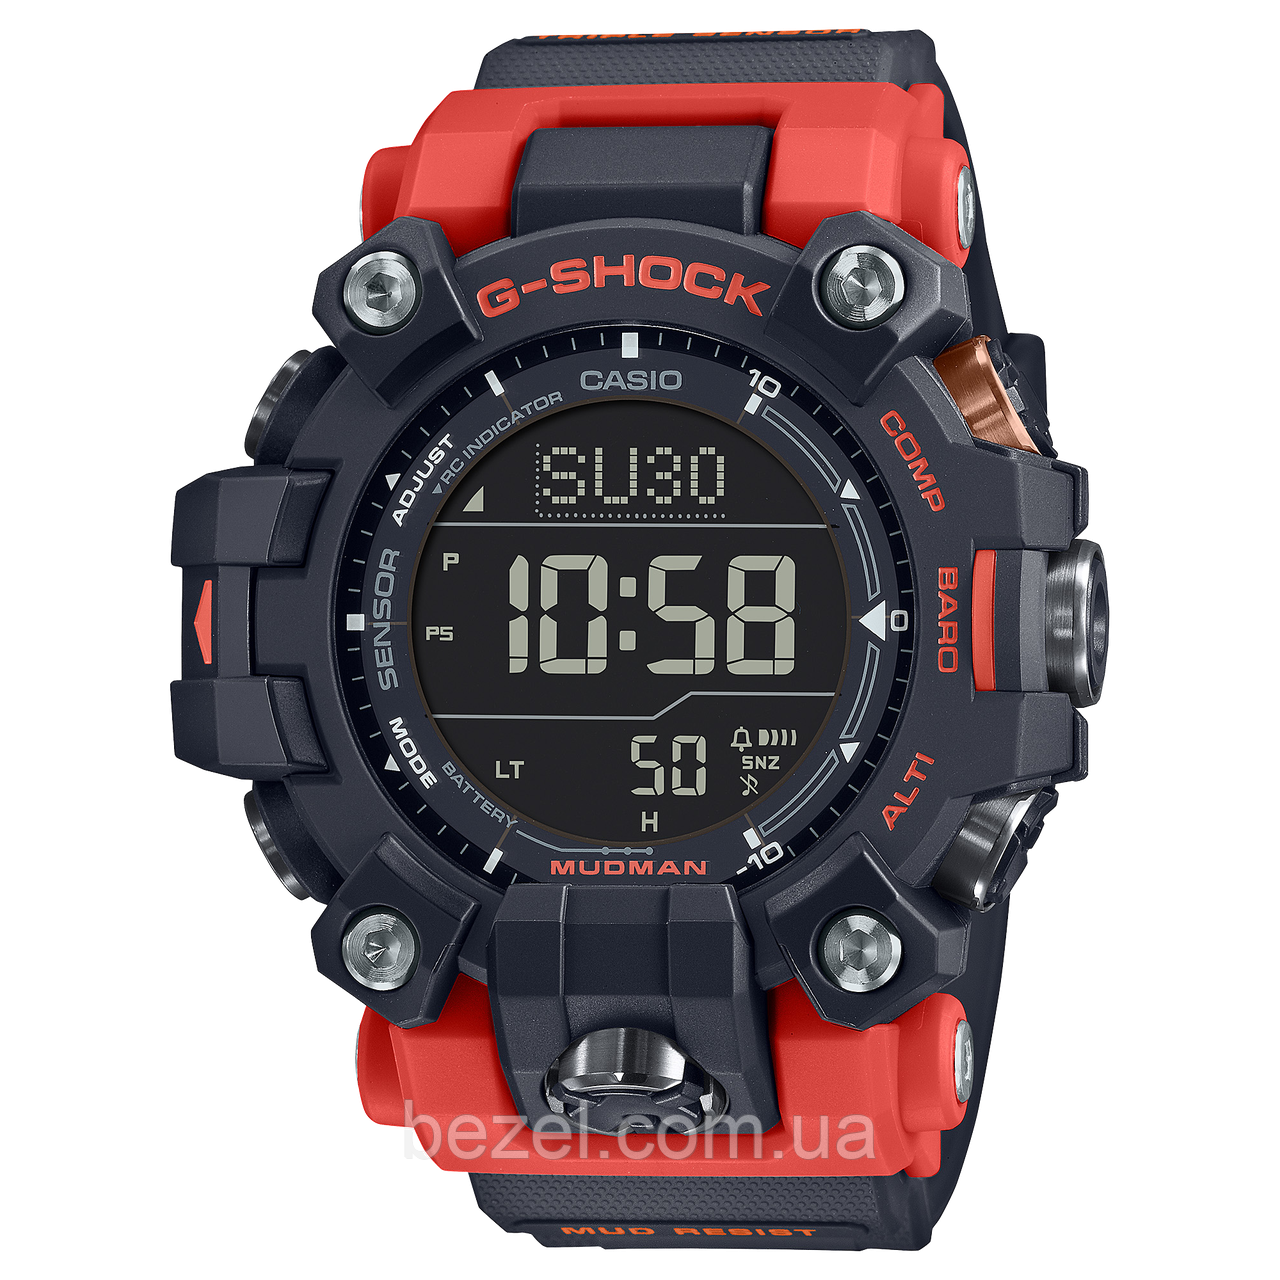 Чоловічі годинники Casio GW-9500-1A4 G-Shock